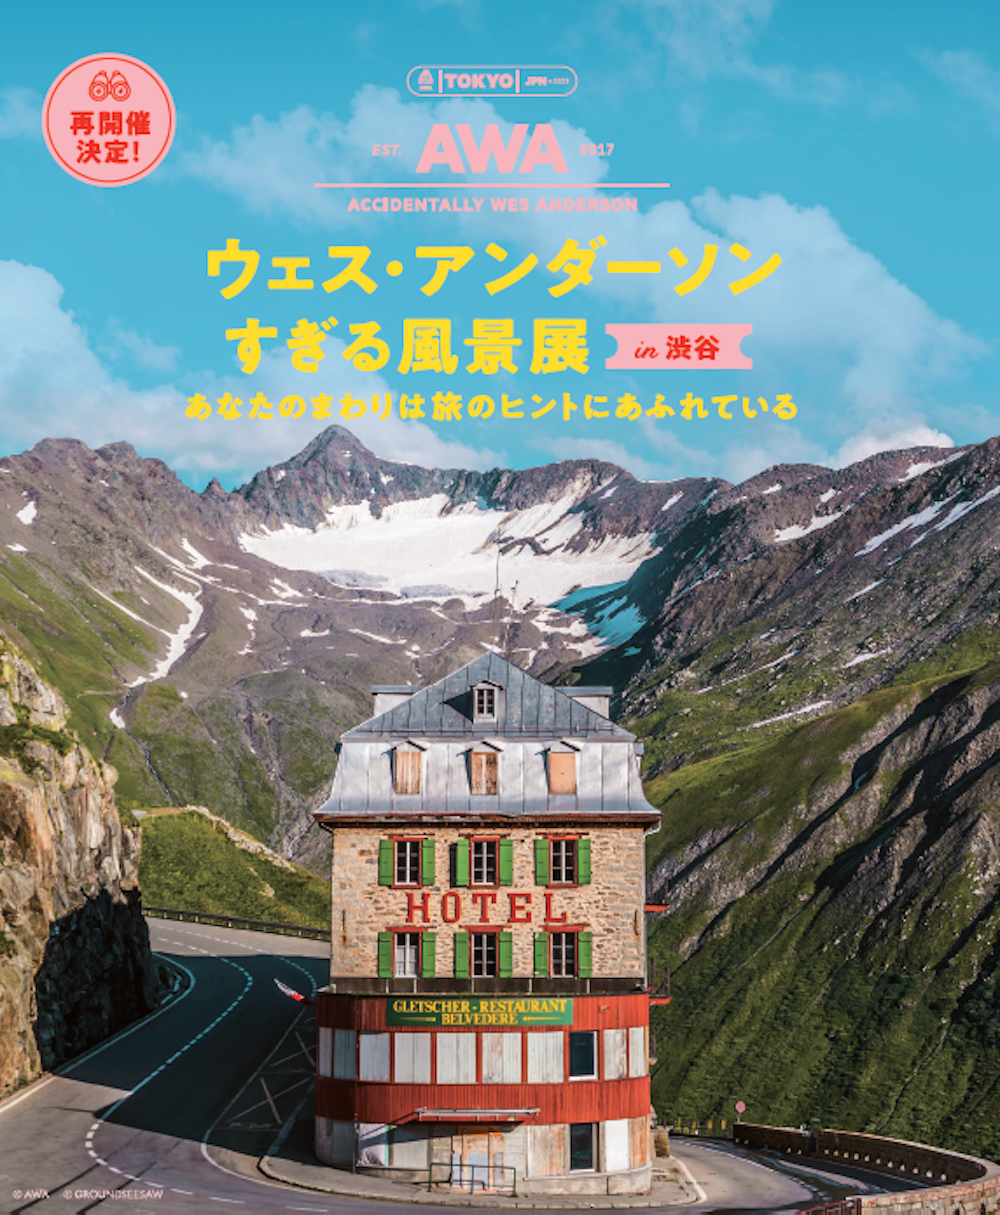  『ウェス・アンダーソンすぎる風景展 in 渋谷 あなたのまわりは旅のヒントにあふれている』 @AWA @GROUNDSEESAW